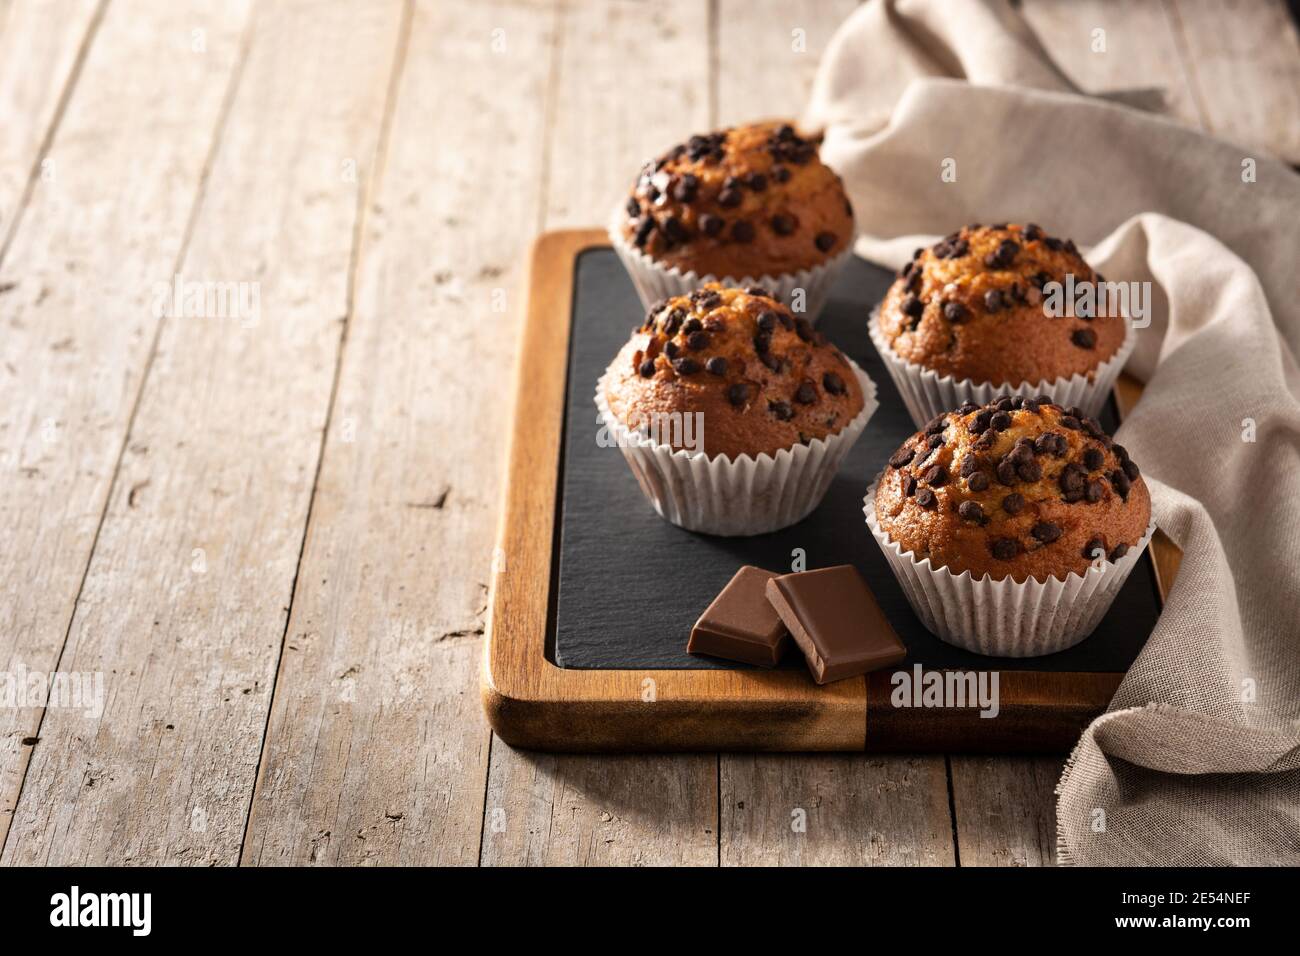 Des muffins au chocolat juste sortis du four sur une table en bois Banque D'Images